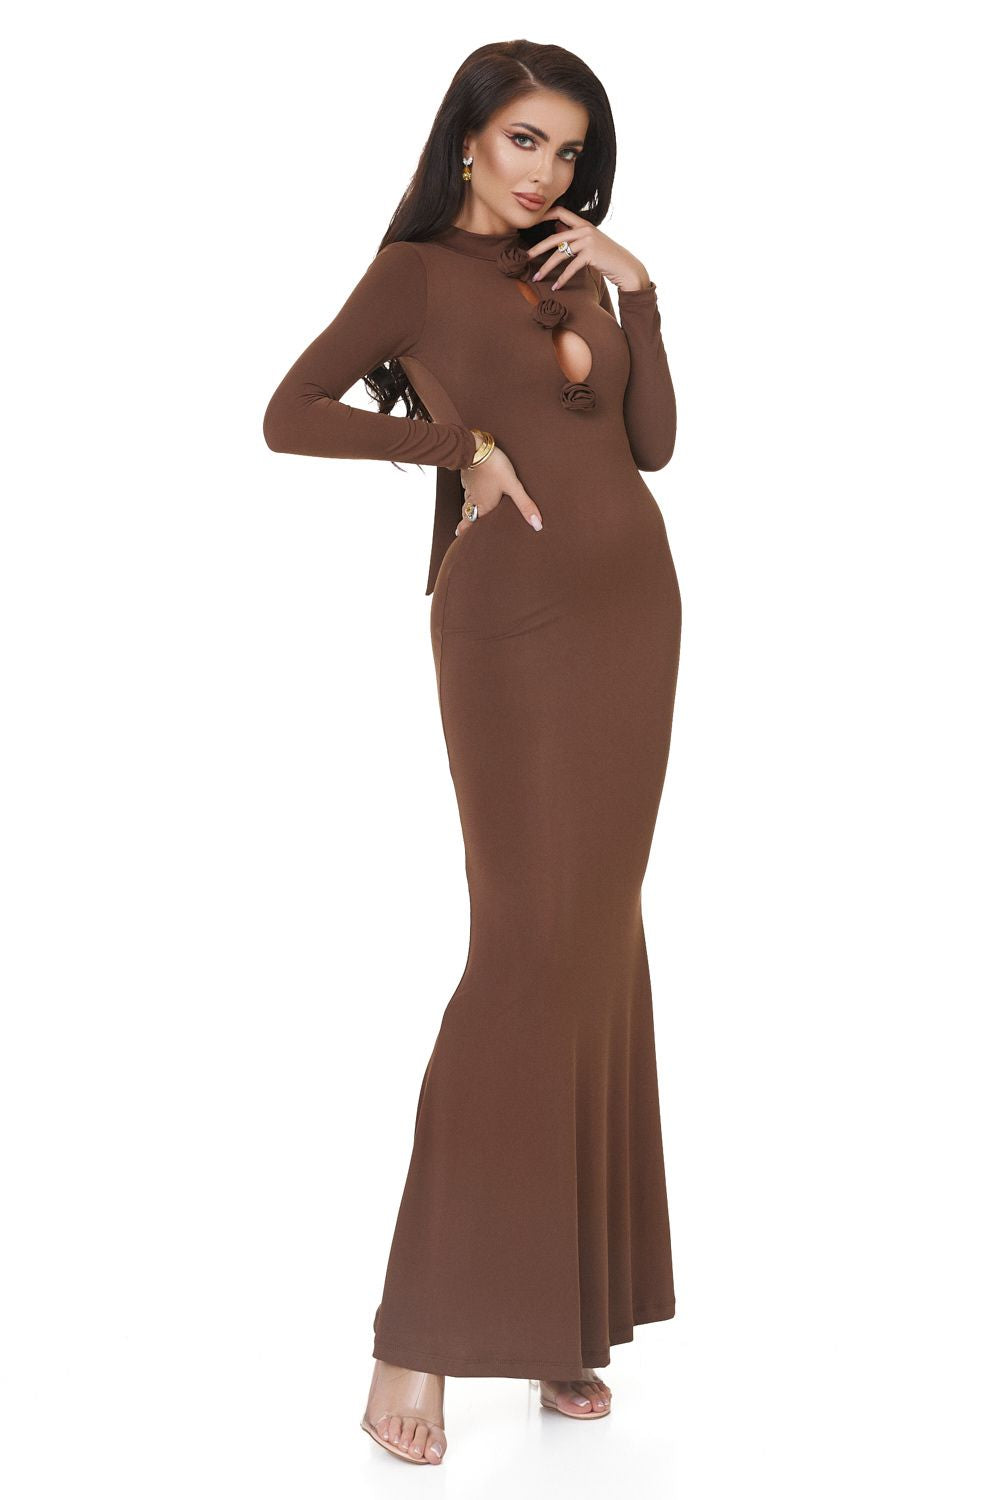 Ladies long brown lycra dress Glenday Bogas